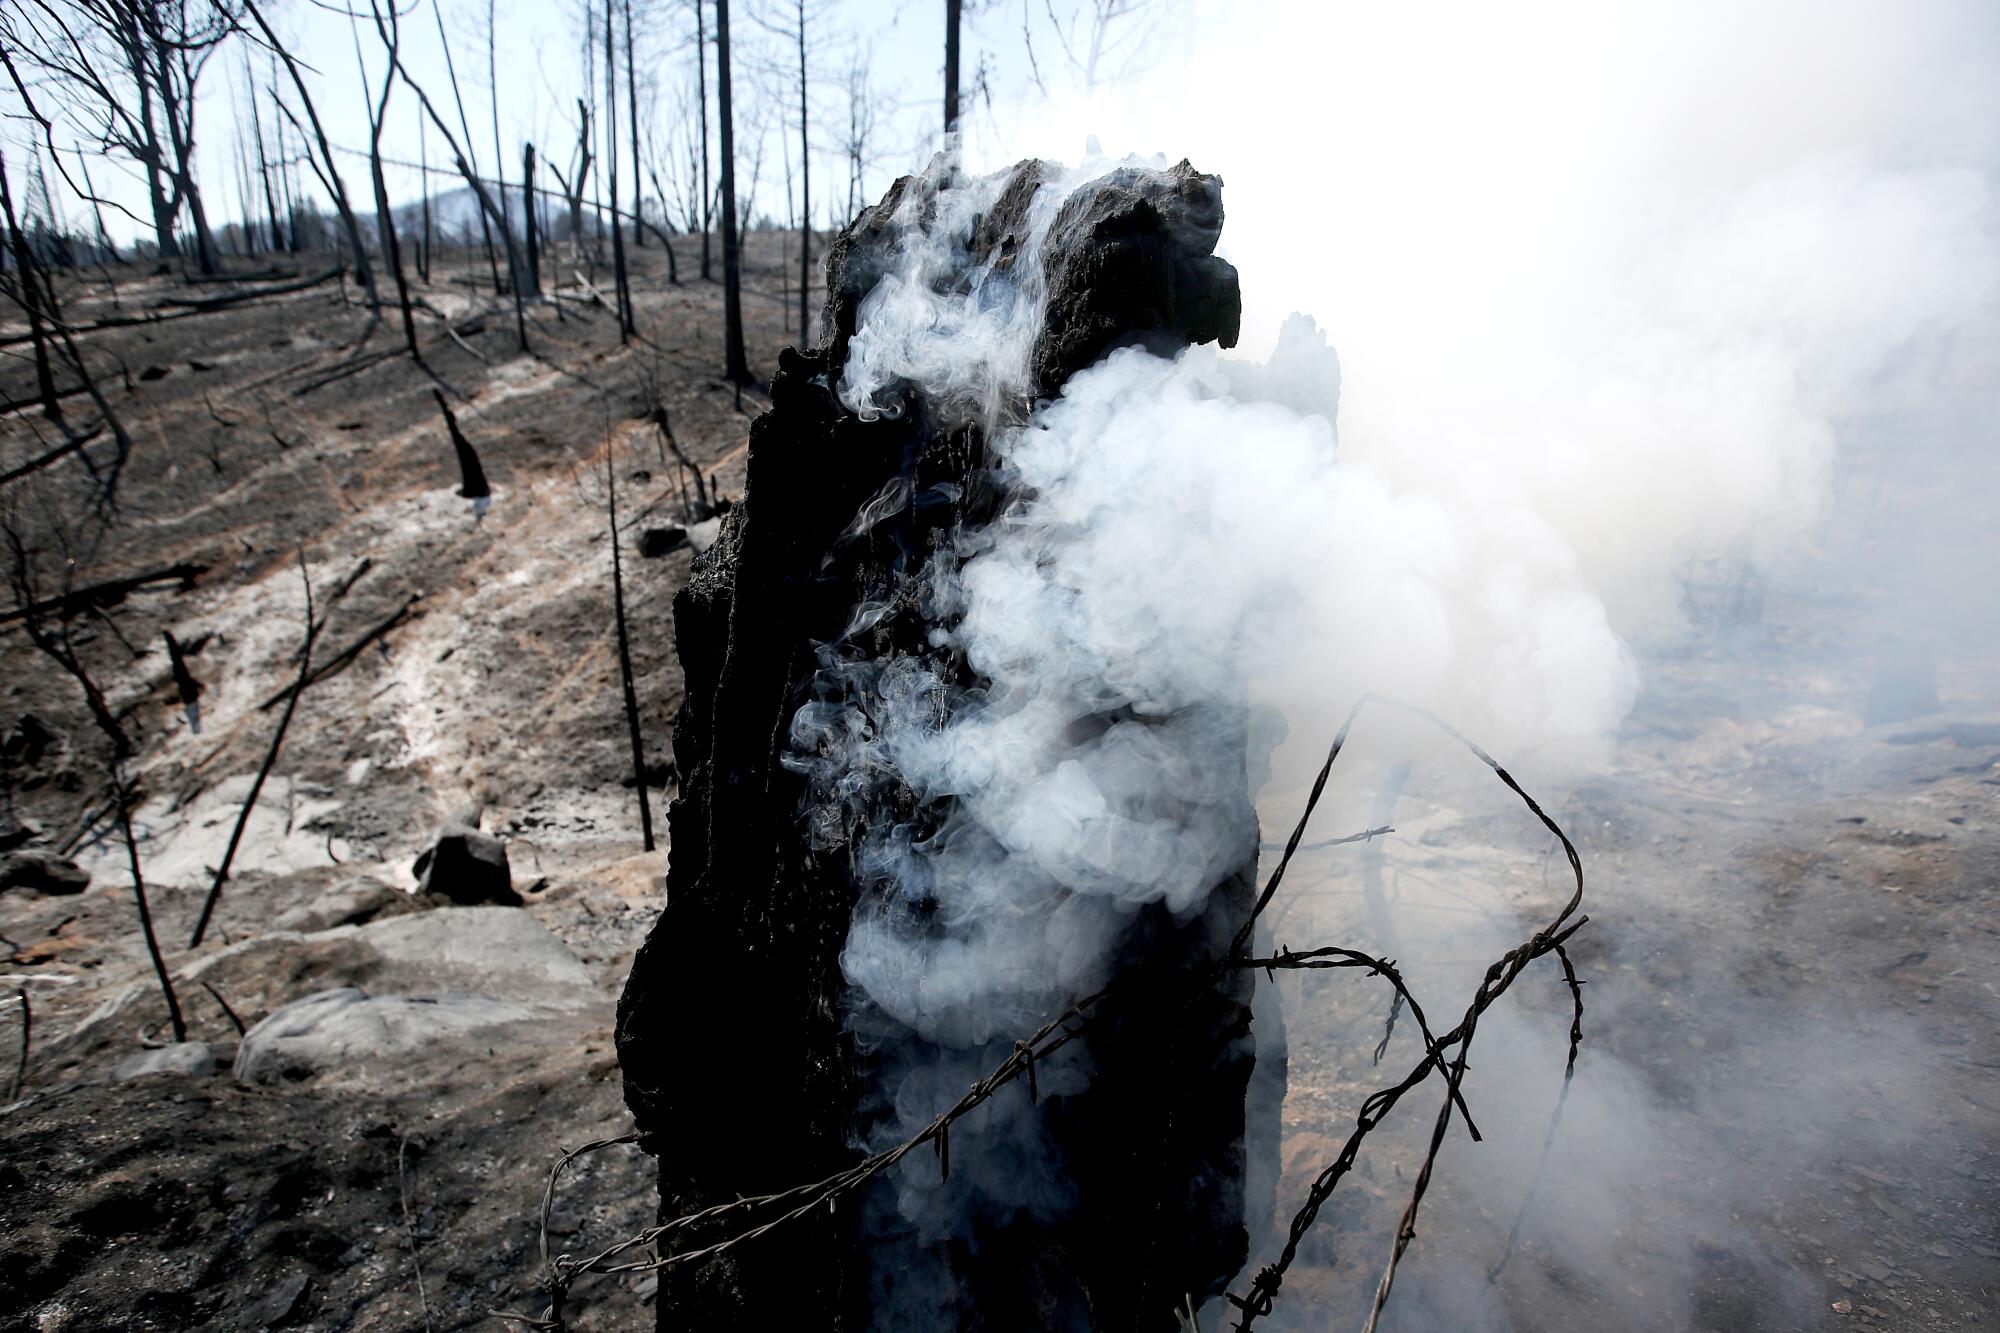 Smoke rises from a charred tree stump.